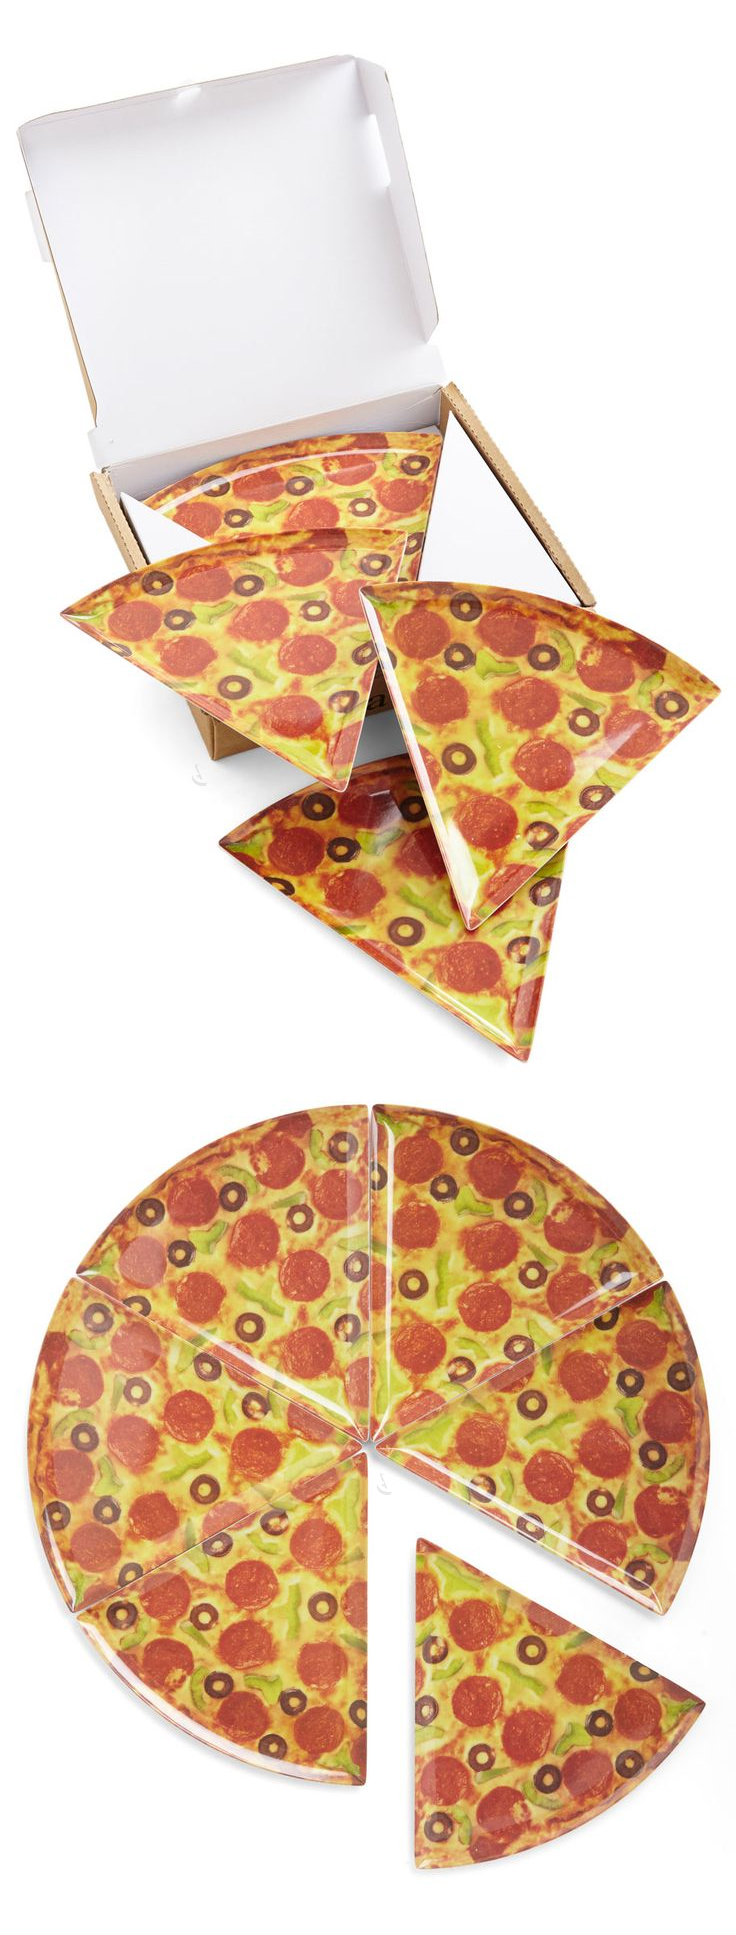 Pizza plates - fun! #product_design